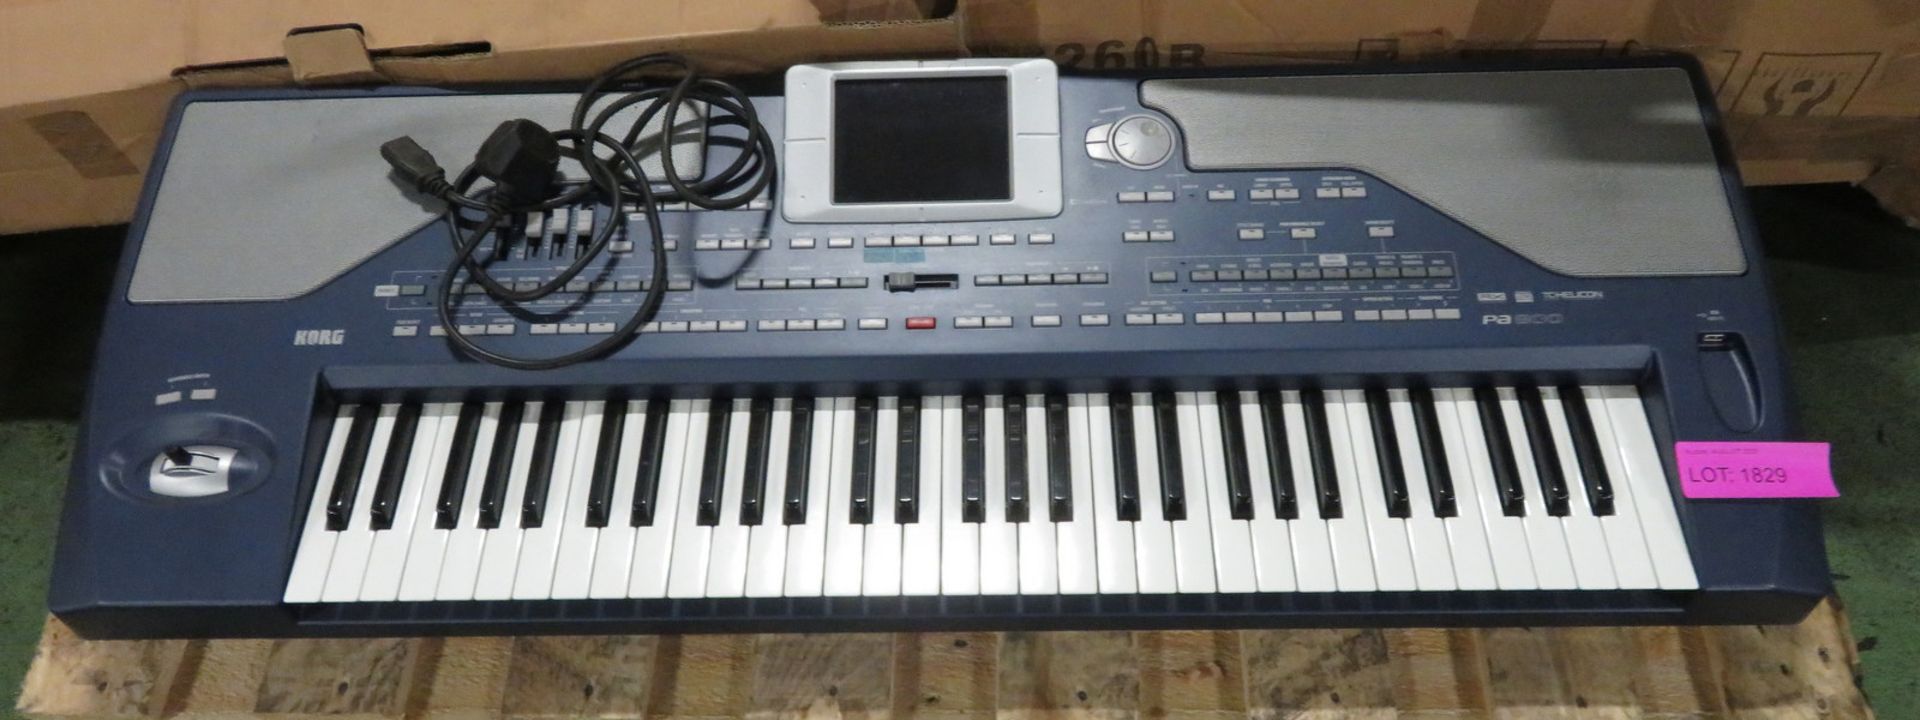 Korg PA800 electronic keyboard